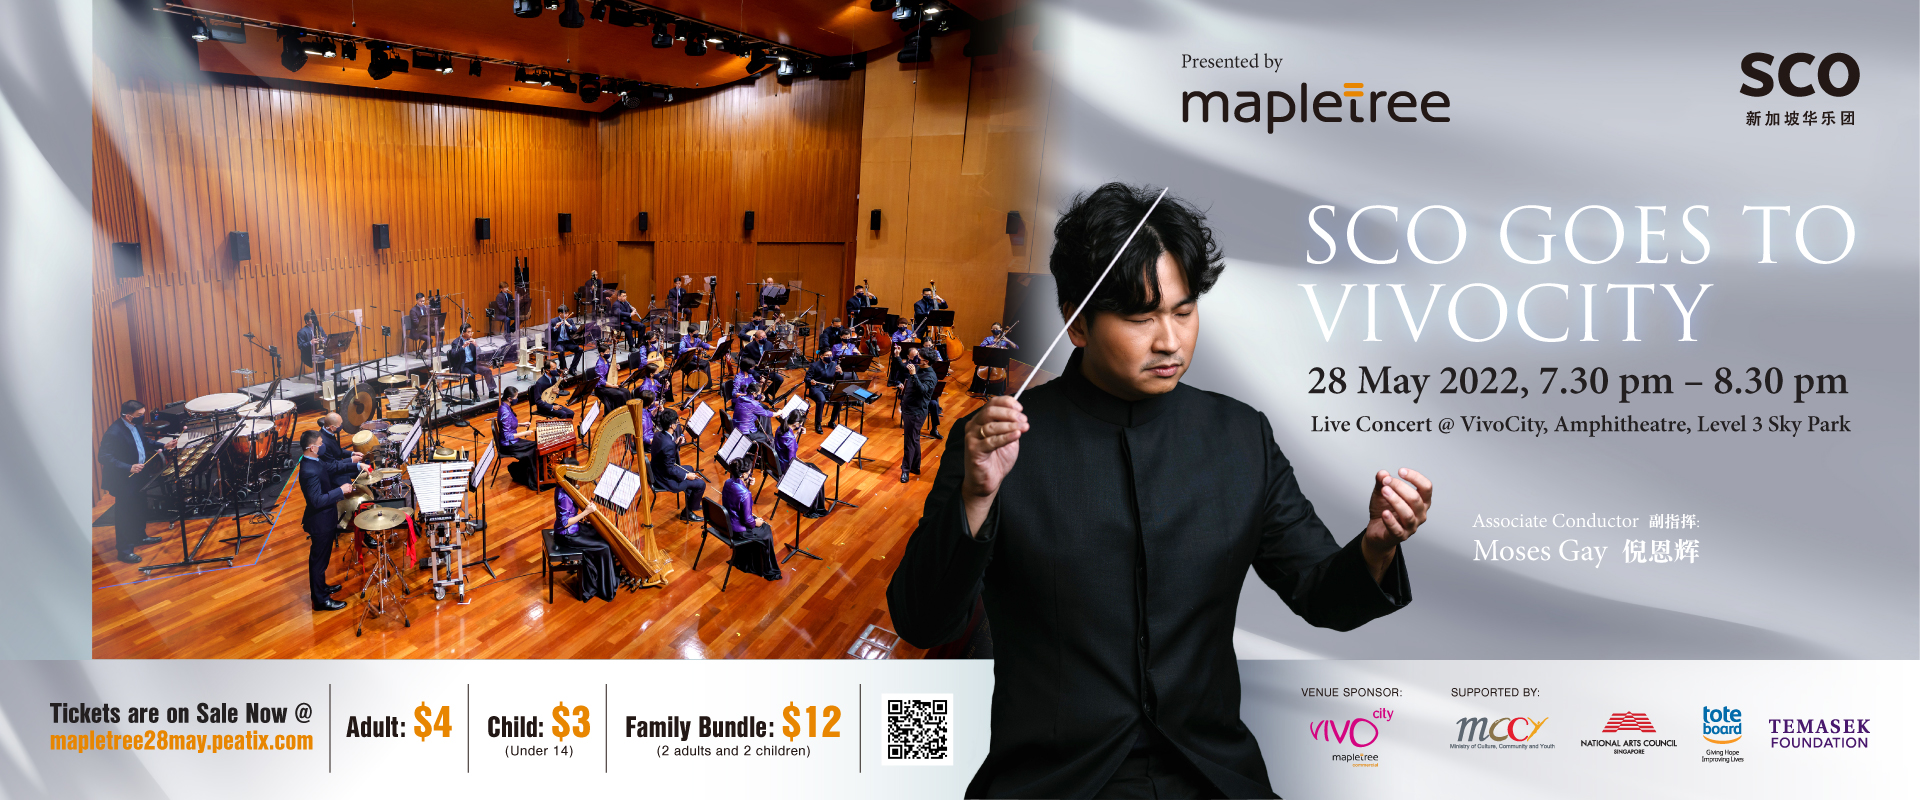 SCO Mapletree Concert 1920x800 3